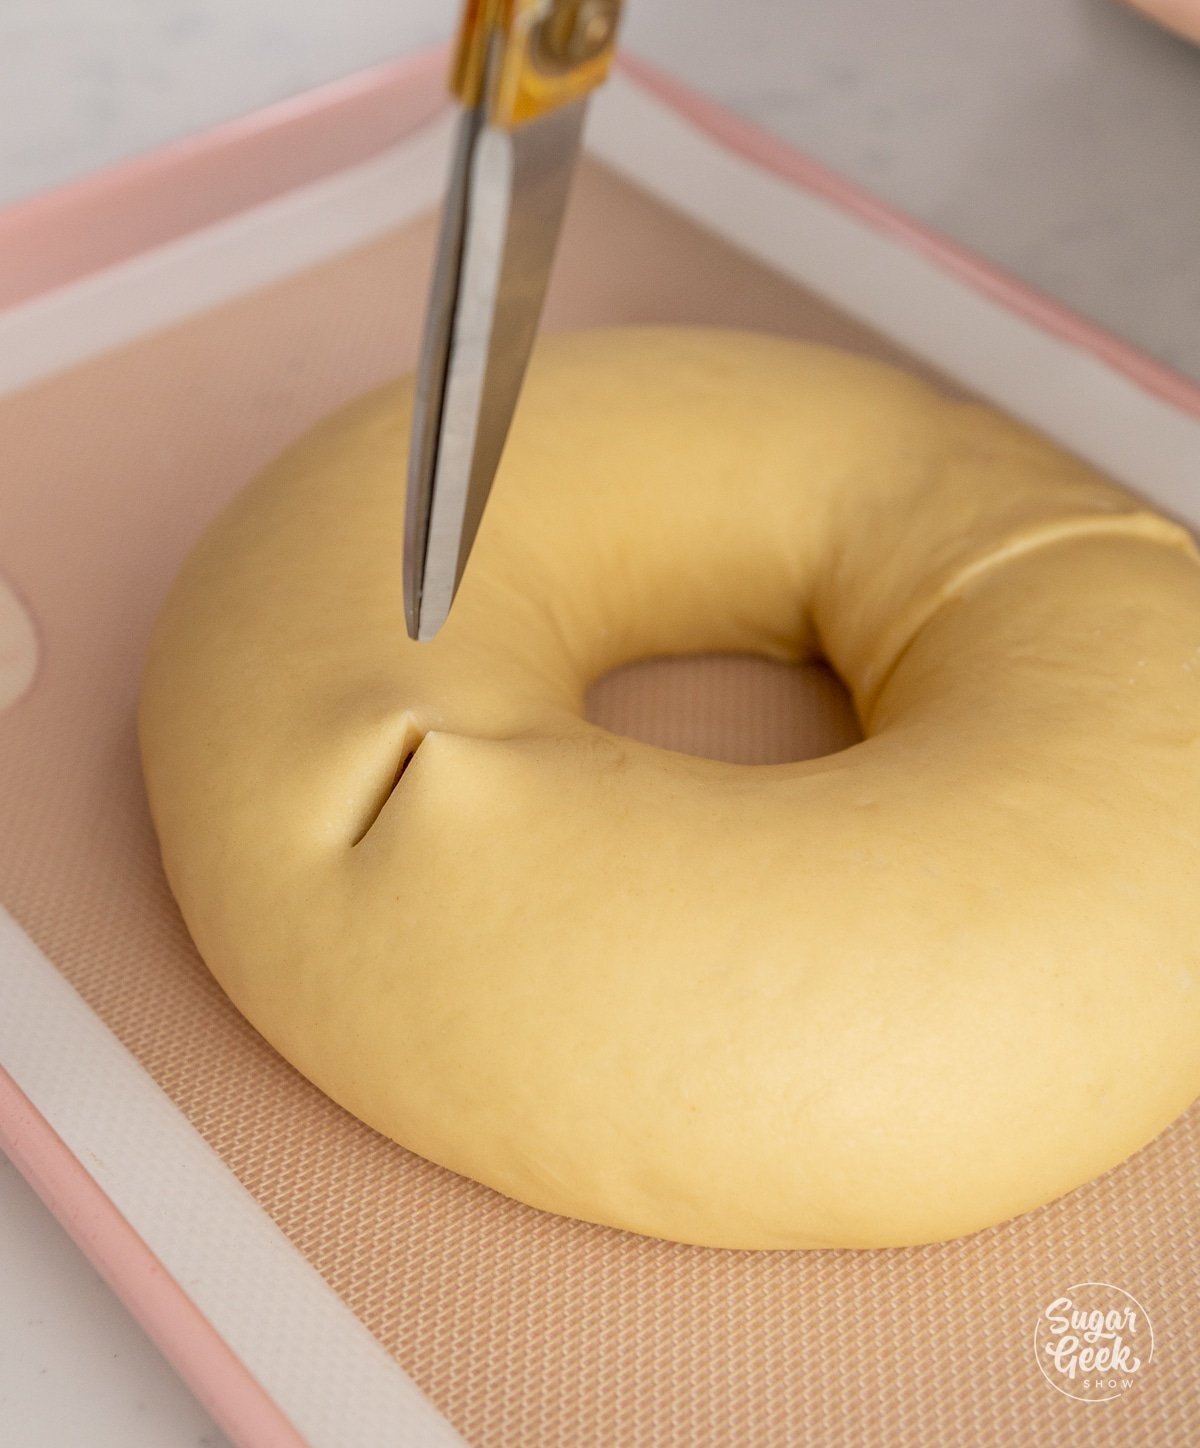 scissors cutting slits in a ring of dough